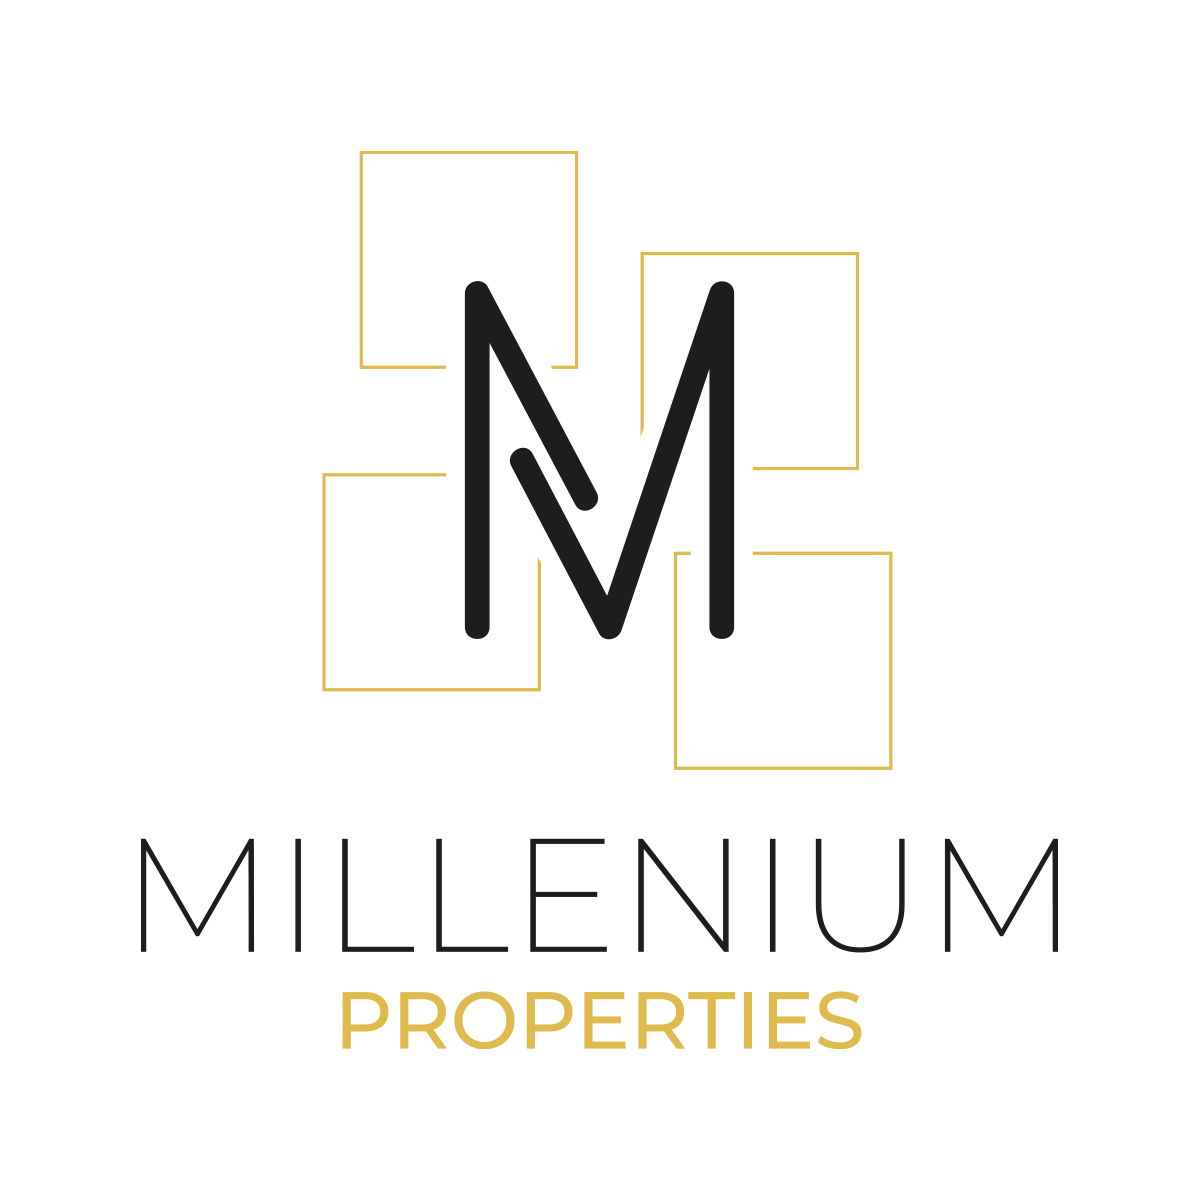 Millenium Properties